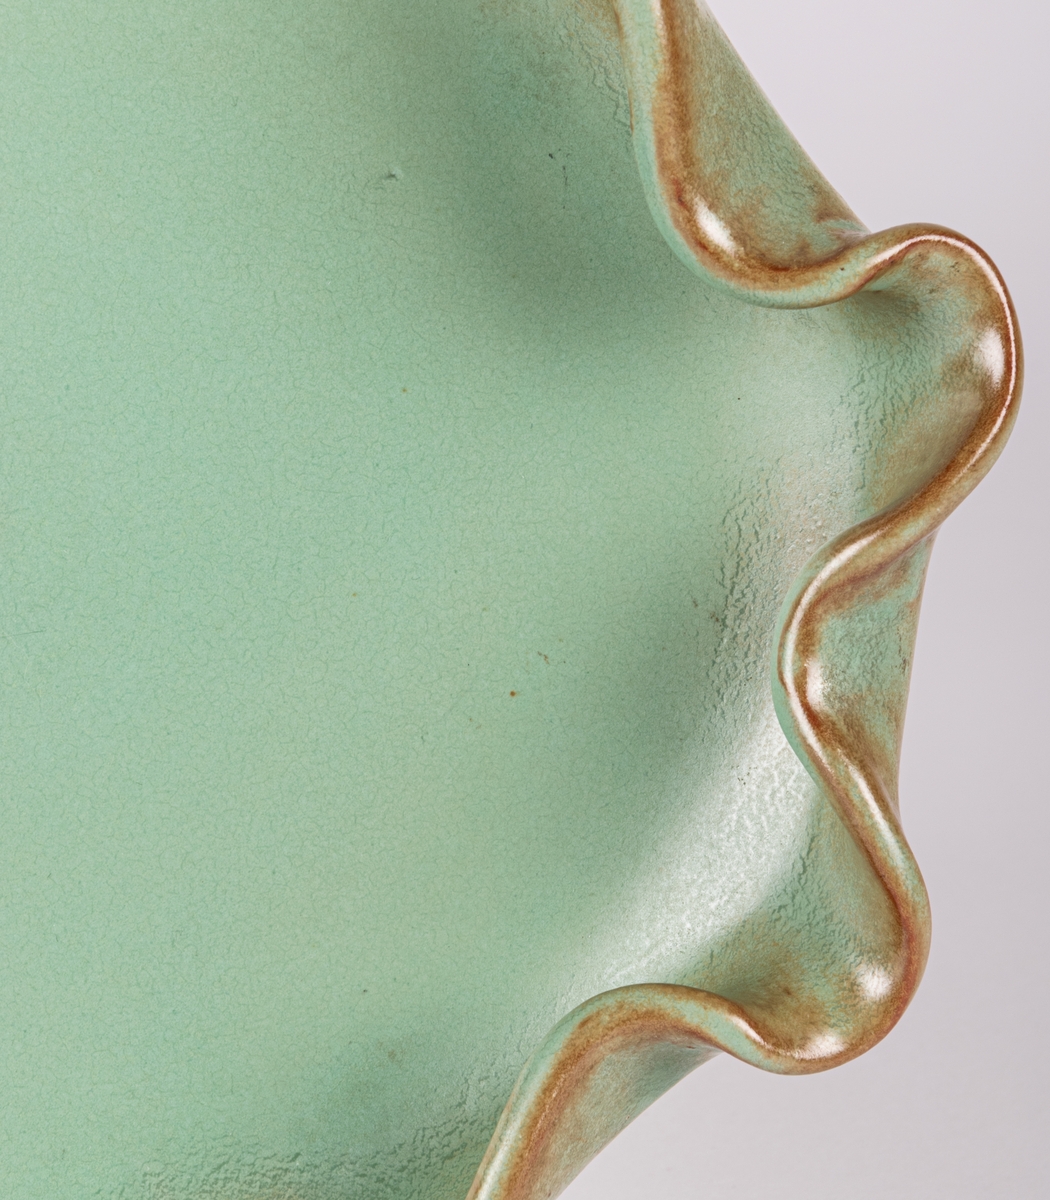 Skål i form av en fisk, glasyr 32; grön matt konstglasyr med bruna skiftningar, formgiven av Eva Jancke-Björk.